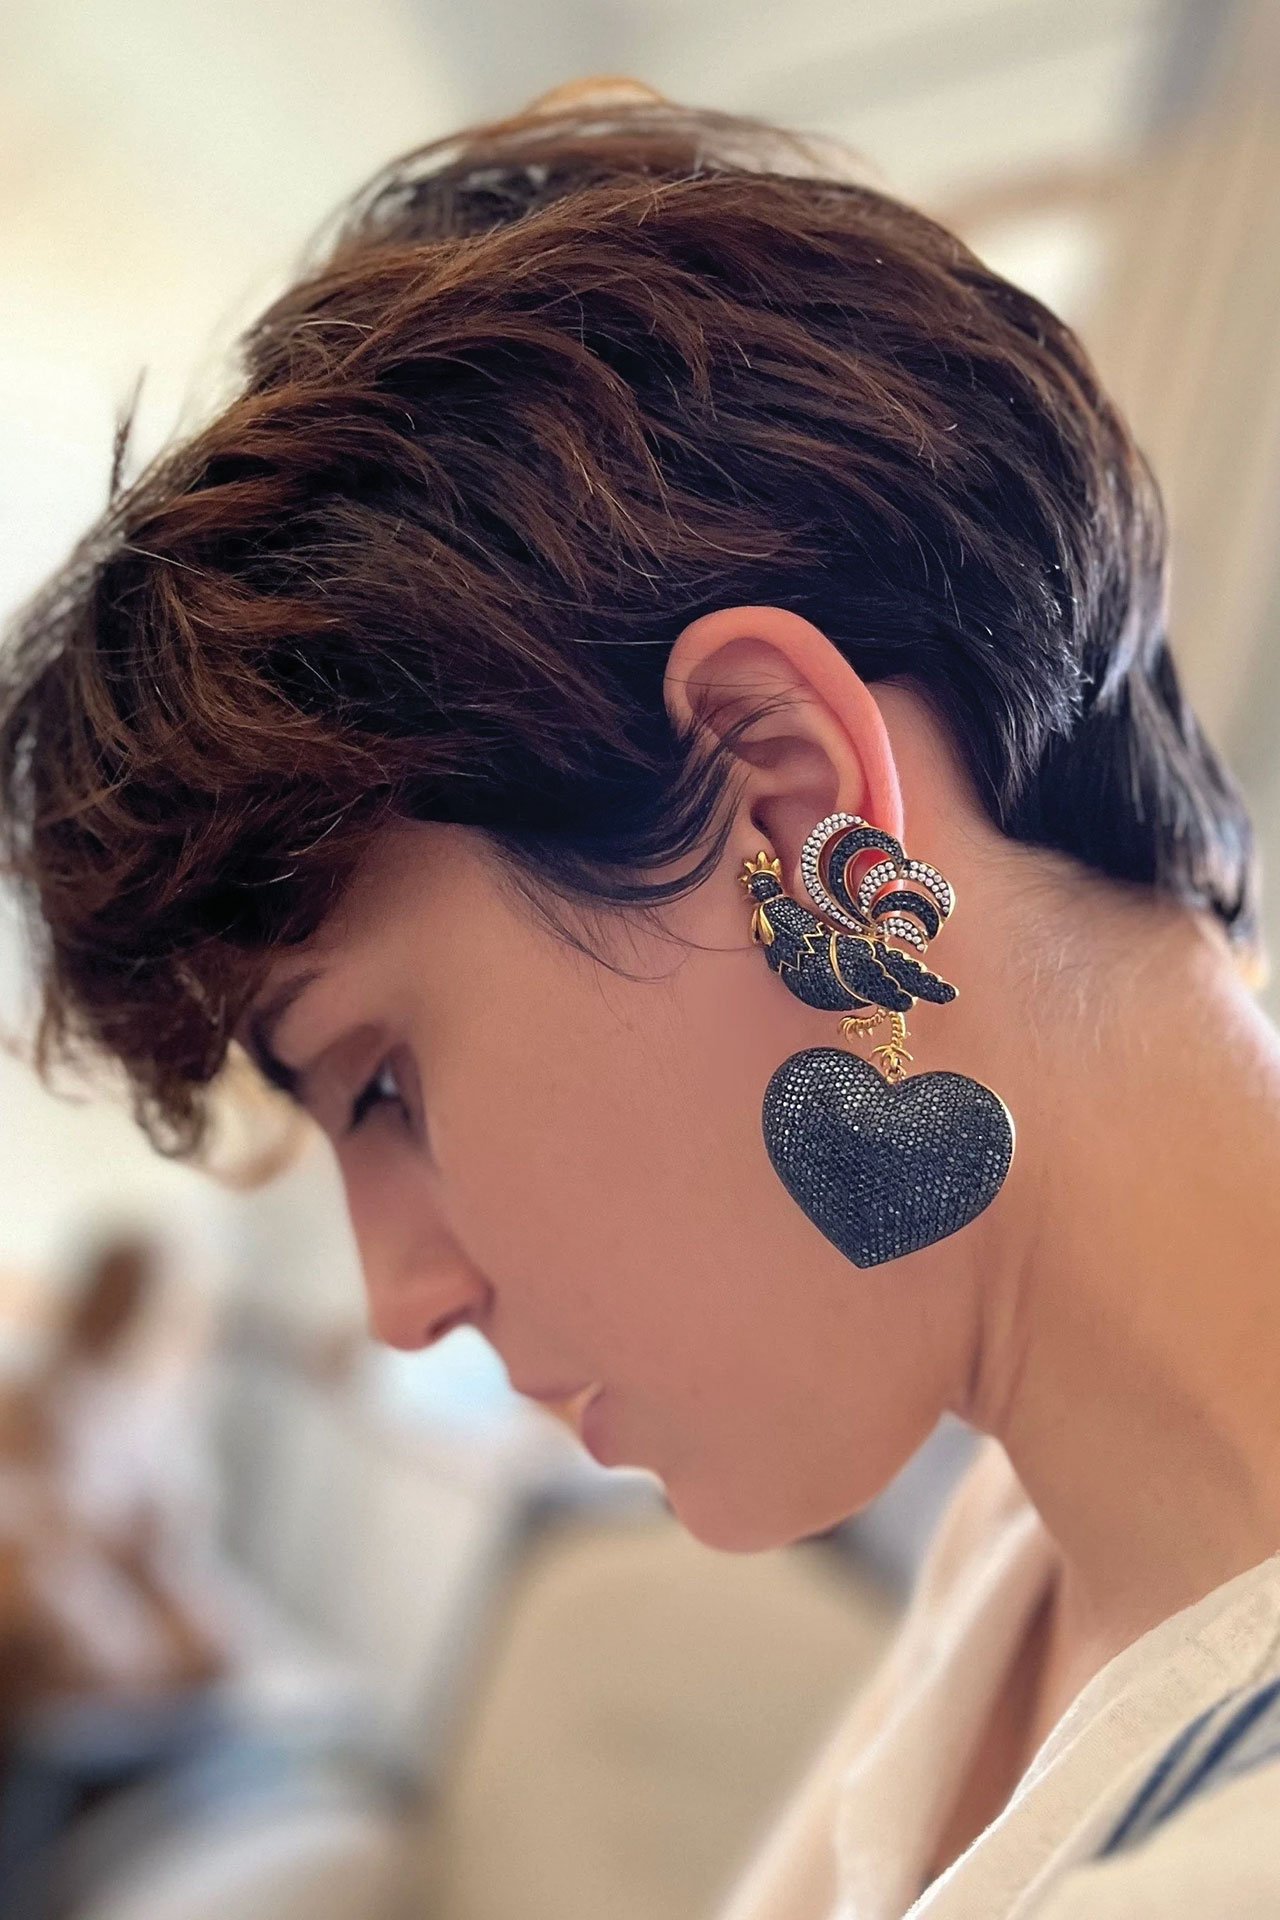 Rooster Earrings